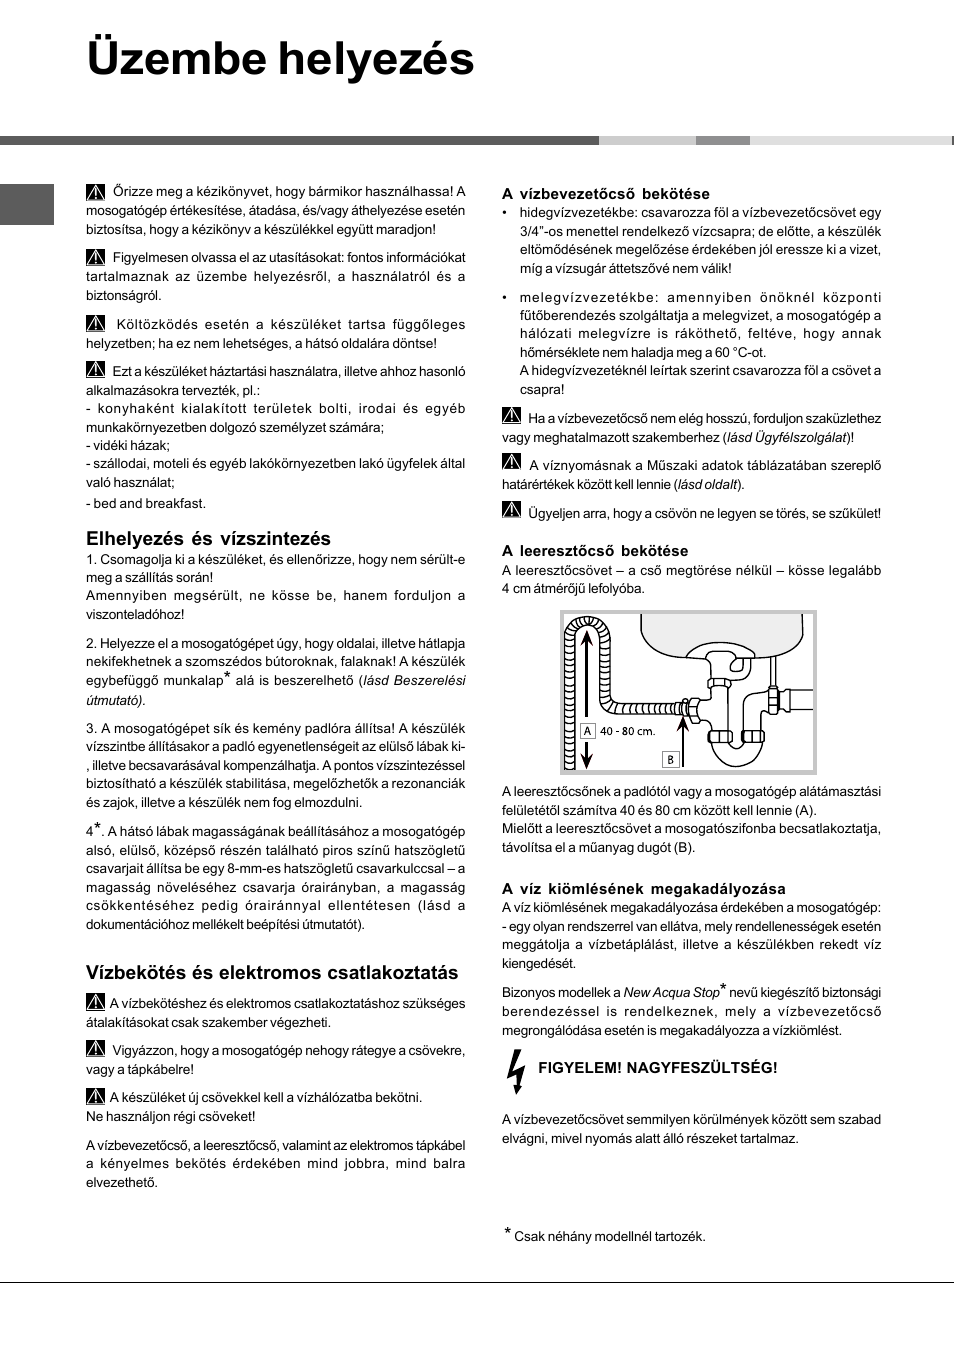 Üzembe helyezés, Elhelyezés és vízszintezés, Vízbekötés és elektromos  csatlakoztatás | Hotpoint Ariston LSFA+ 935 User Manual | Page 62 / 84